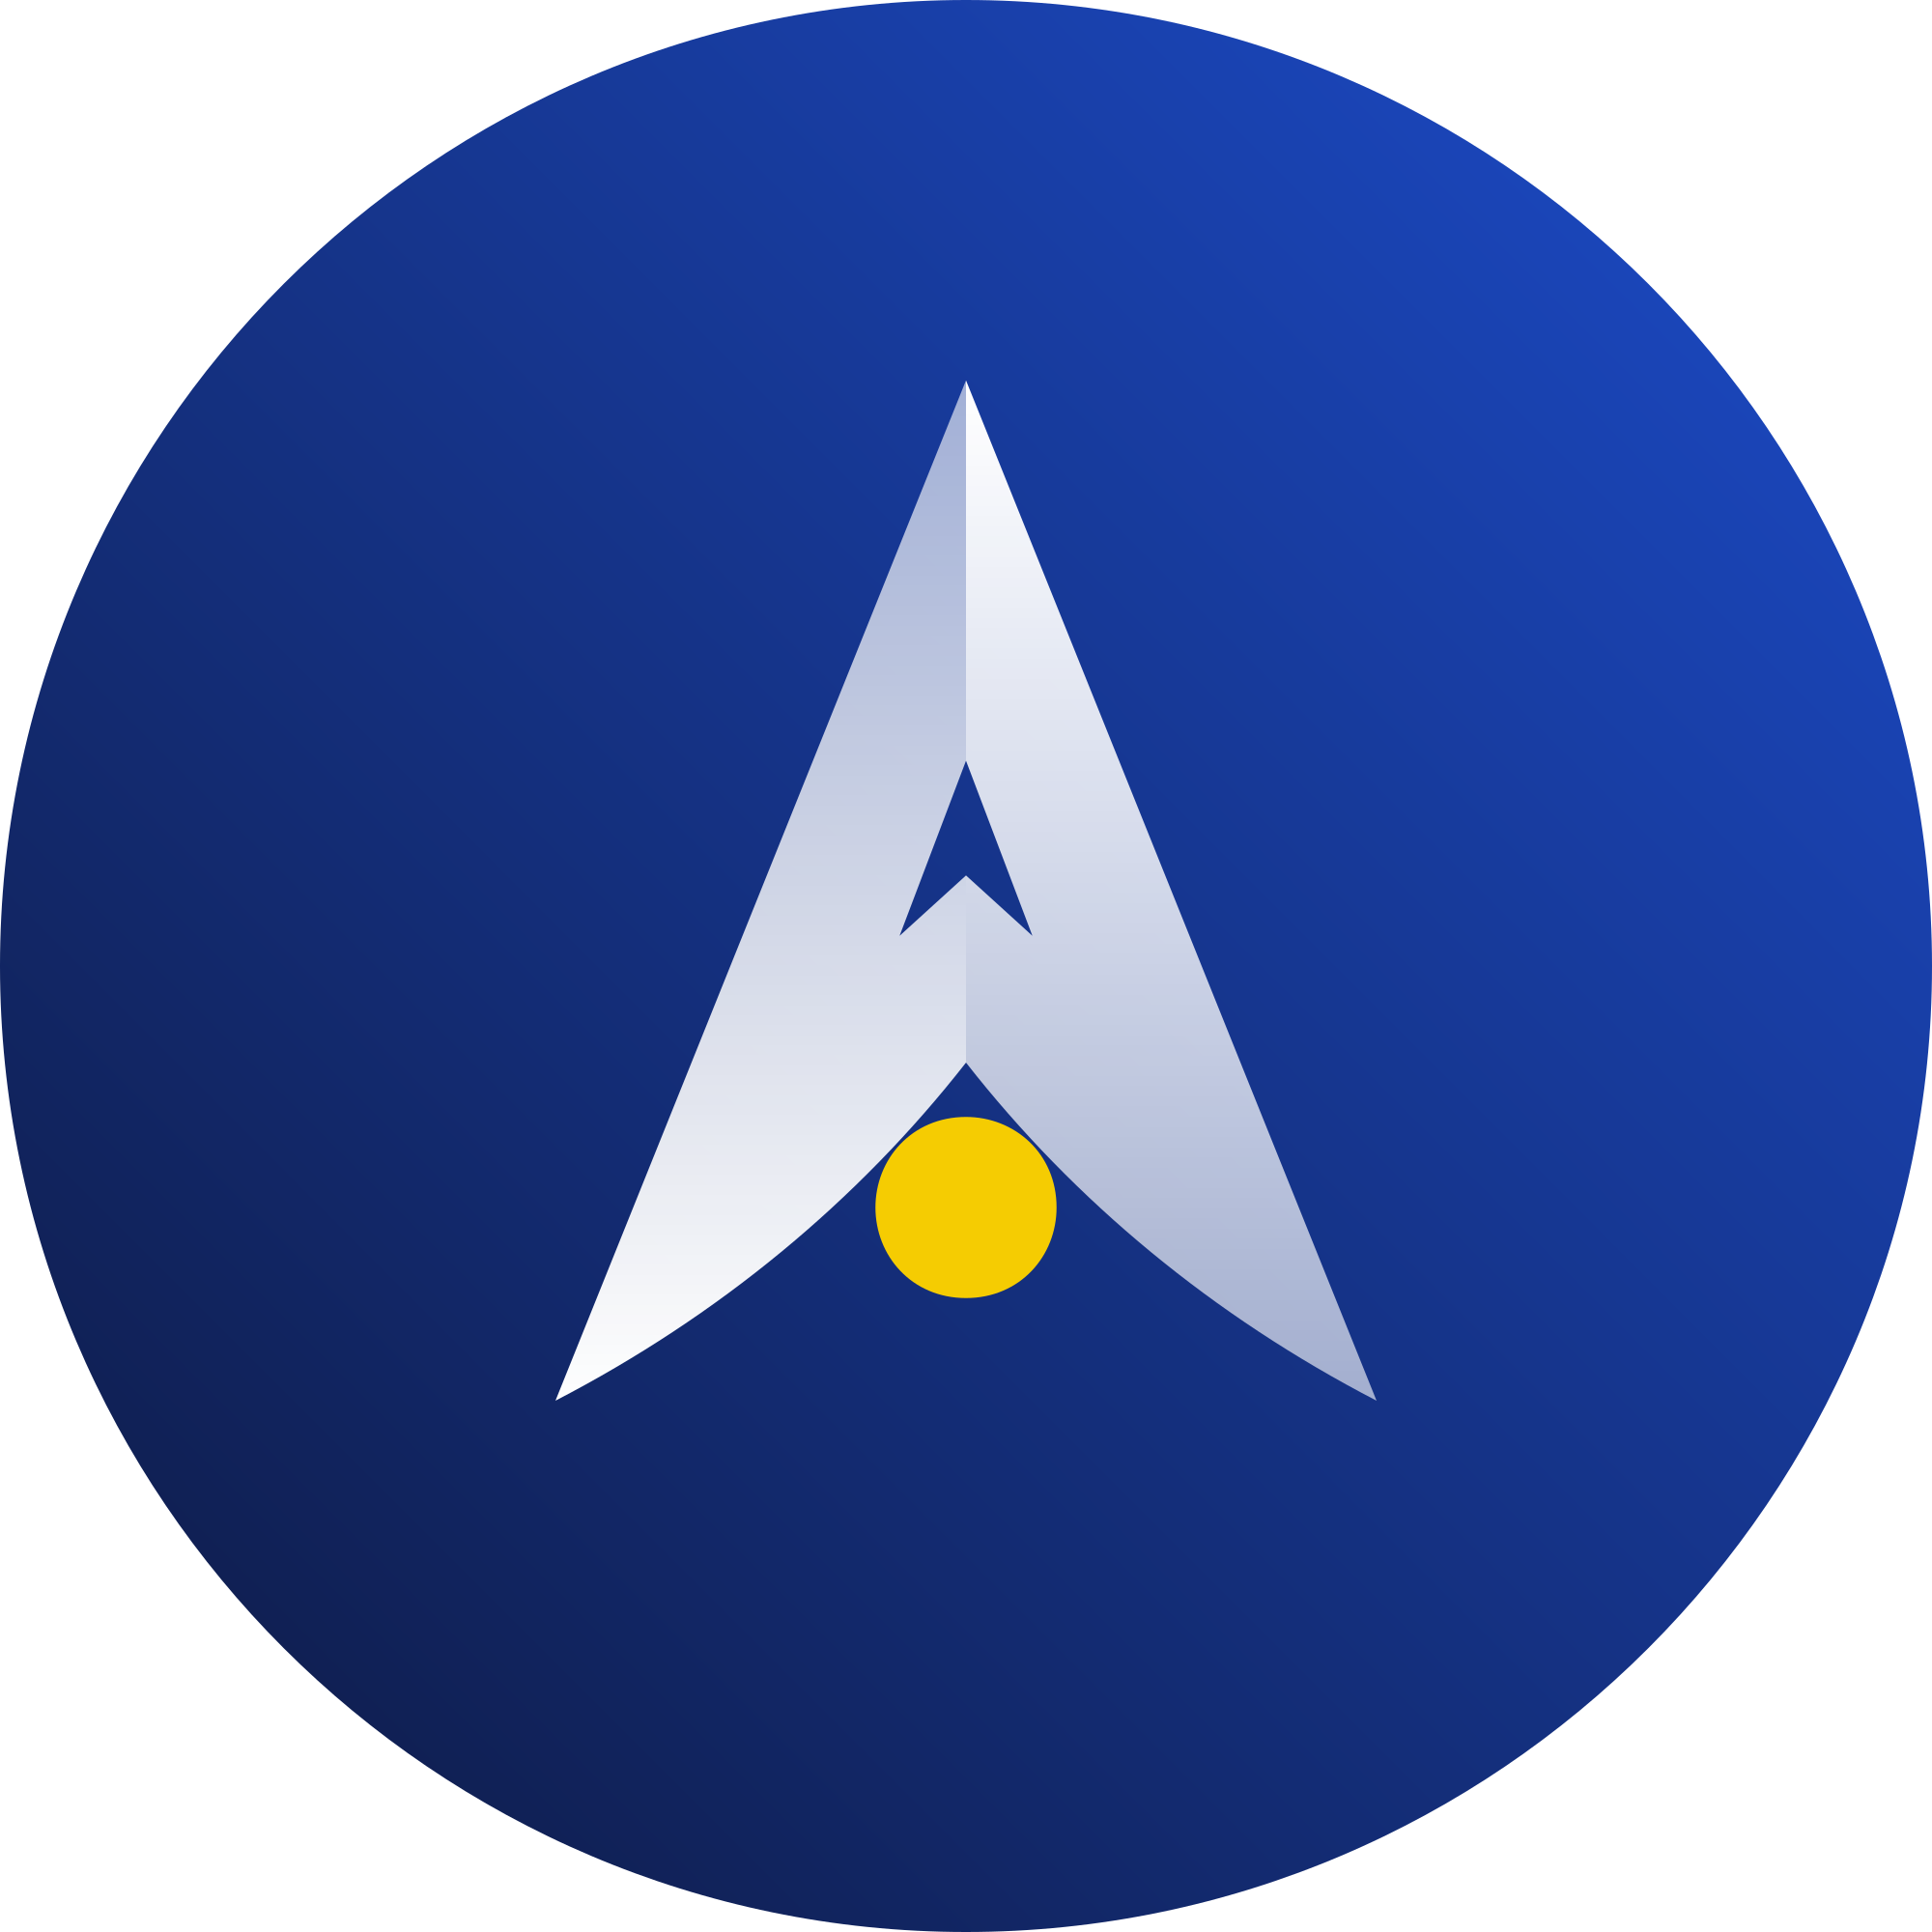 alpha logo png